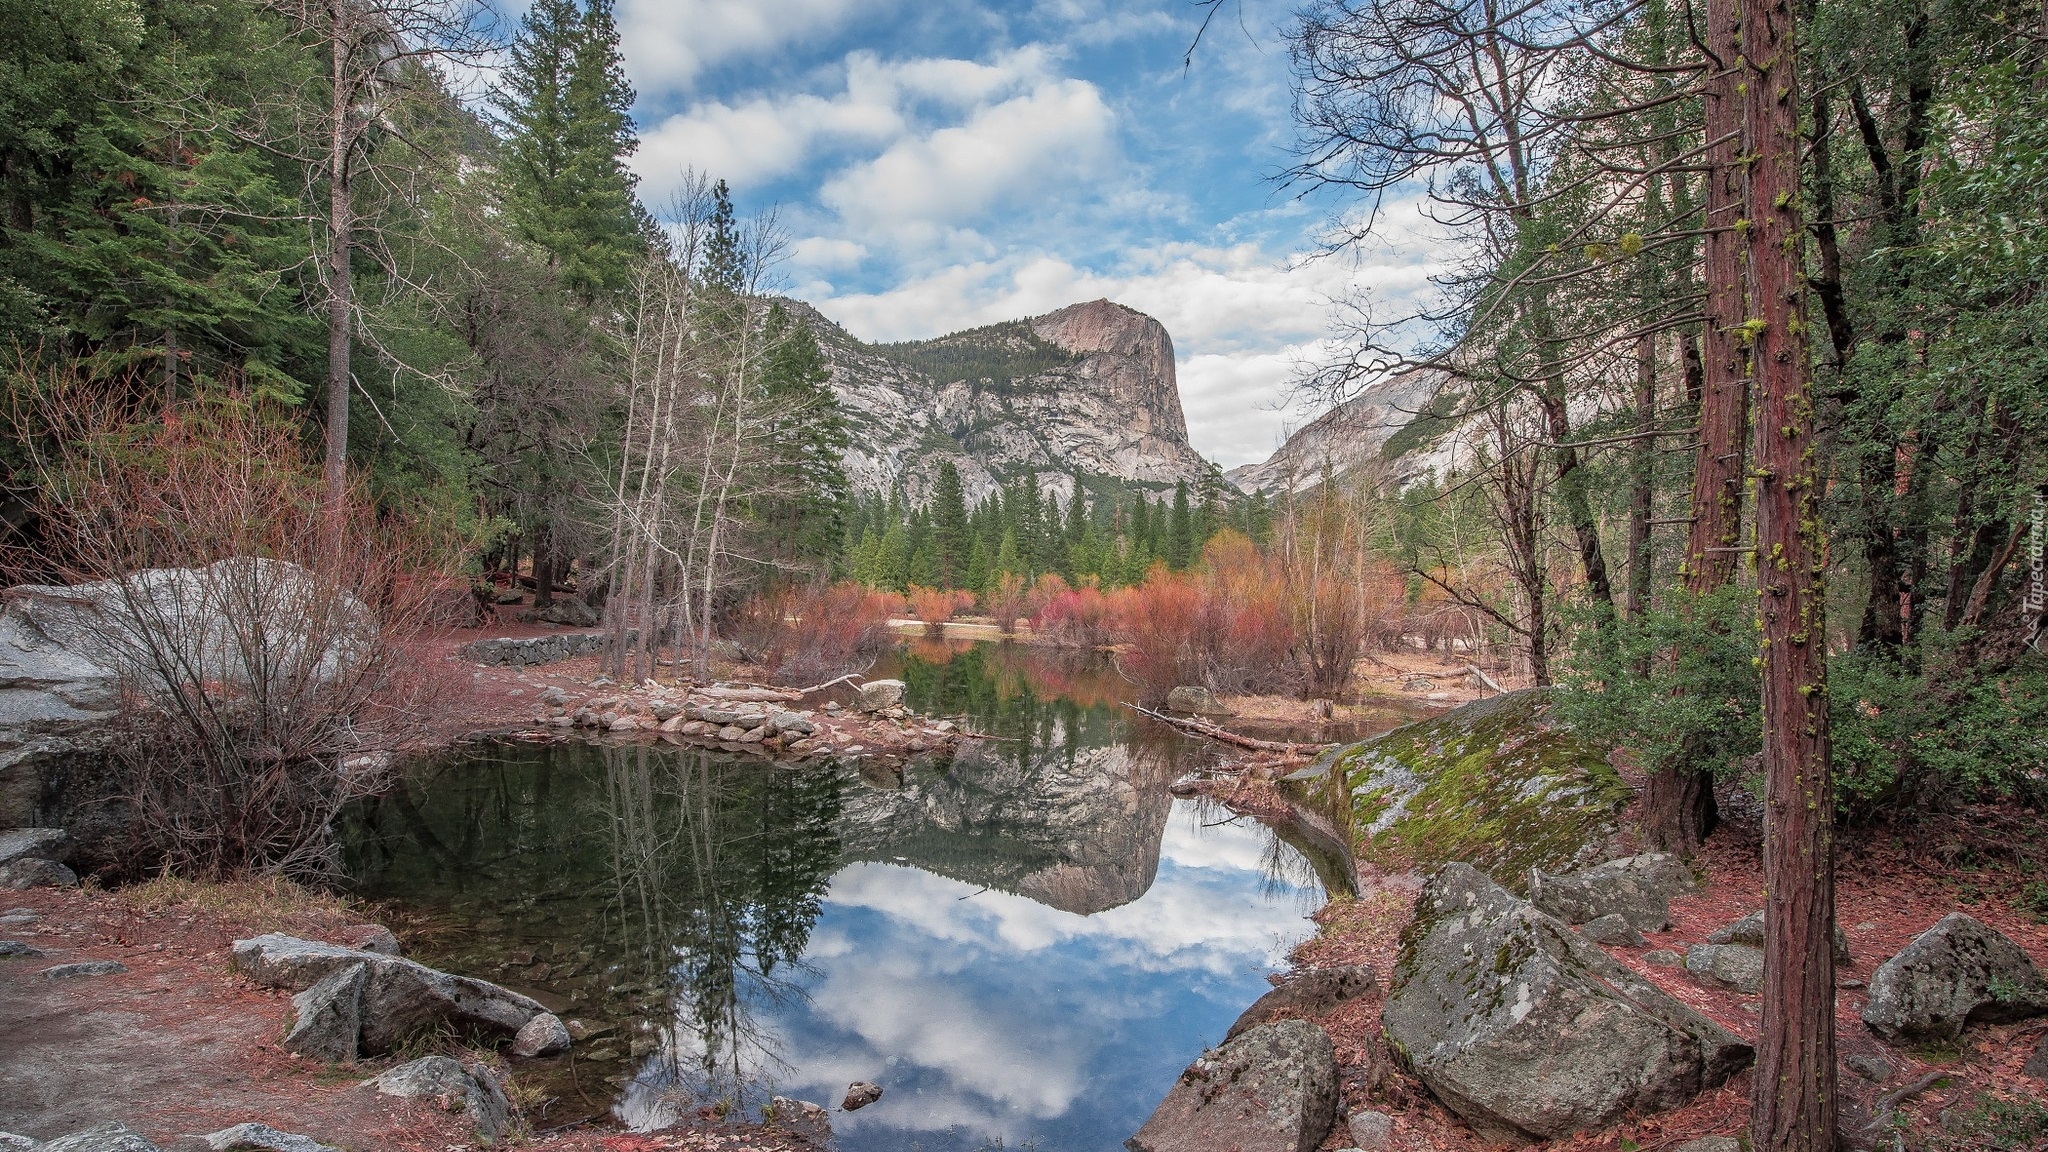 Park Narodowy Yosemite, Góry, Szczyt Half Dome, Skały, Drzewa, Jezioro Mirror Lake, Stan Kalifornia, Stany Zjednoczone